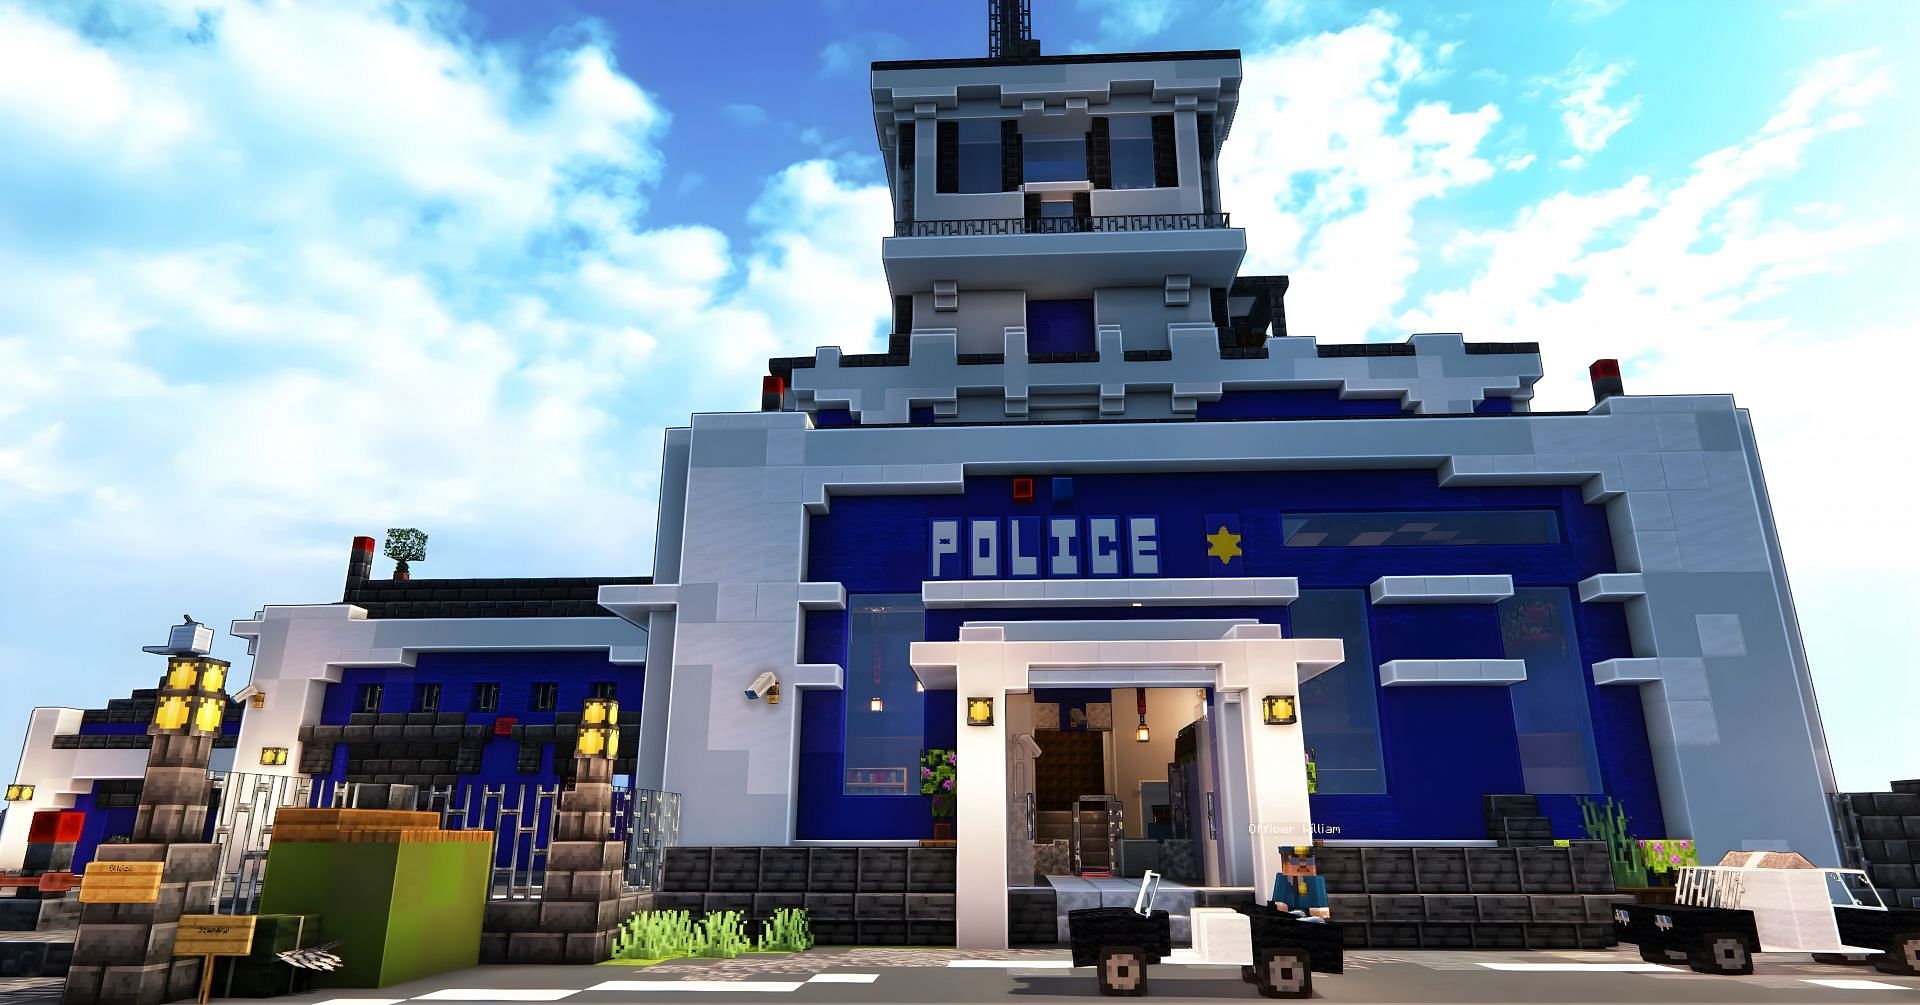 Police stations make for unique Minecraft builds (Image via Reddit/u/dancsa222)